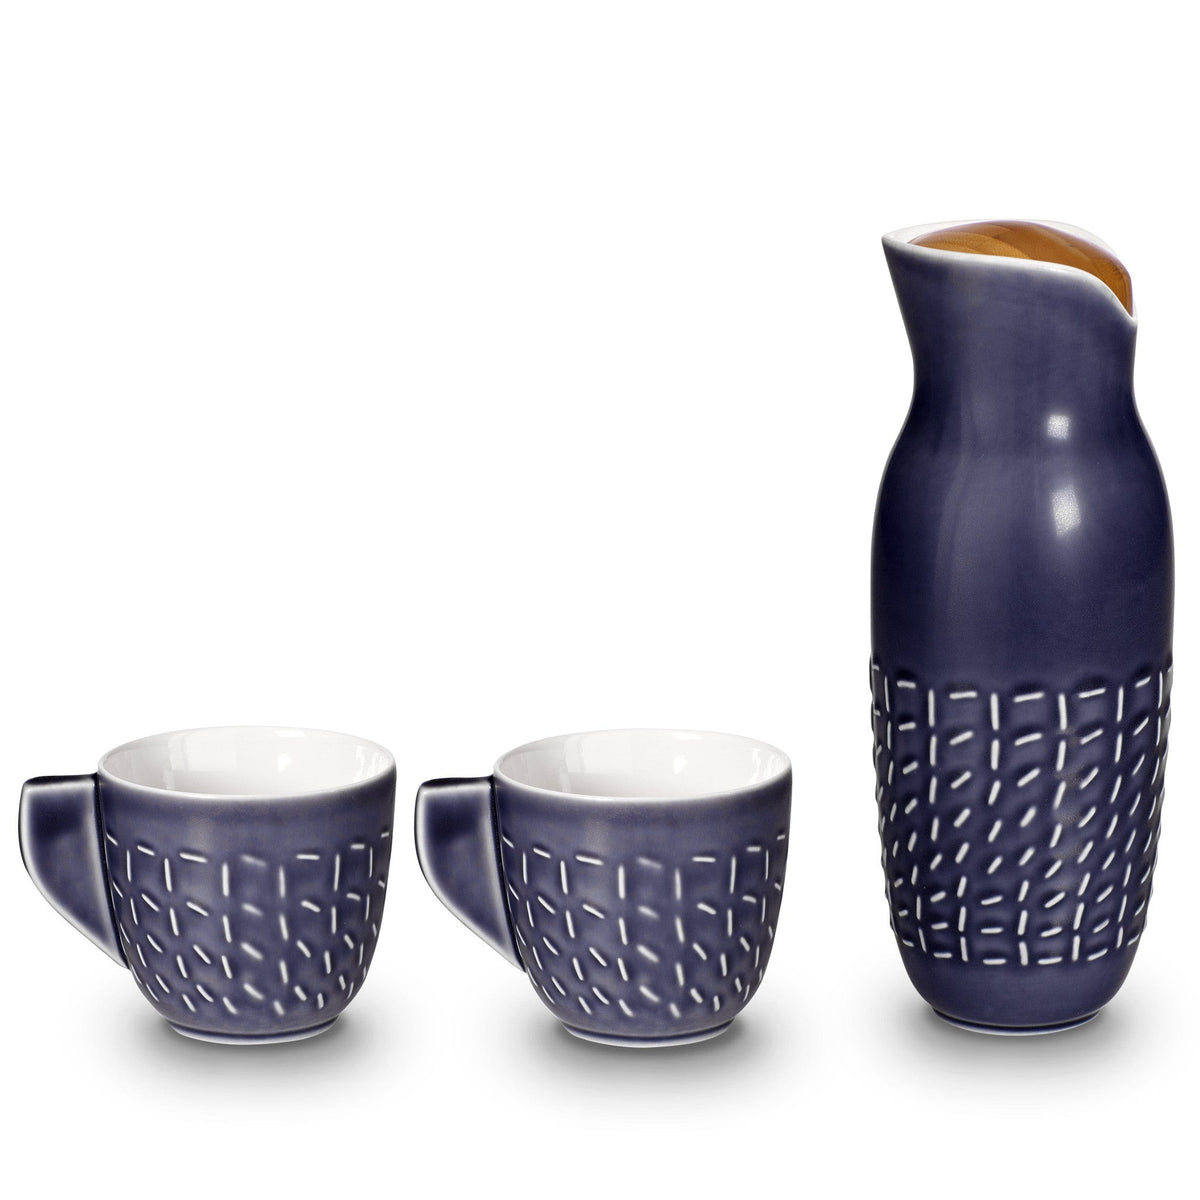 Footprint Carafe Set with Tea Cups, Carafe 31oz, Cup 10 oz, Ceramics, Bamboo-3